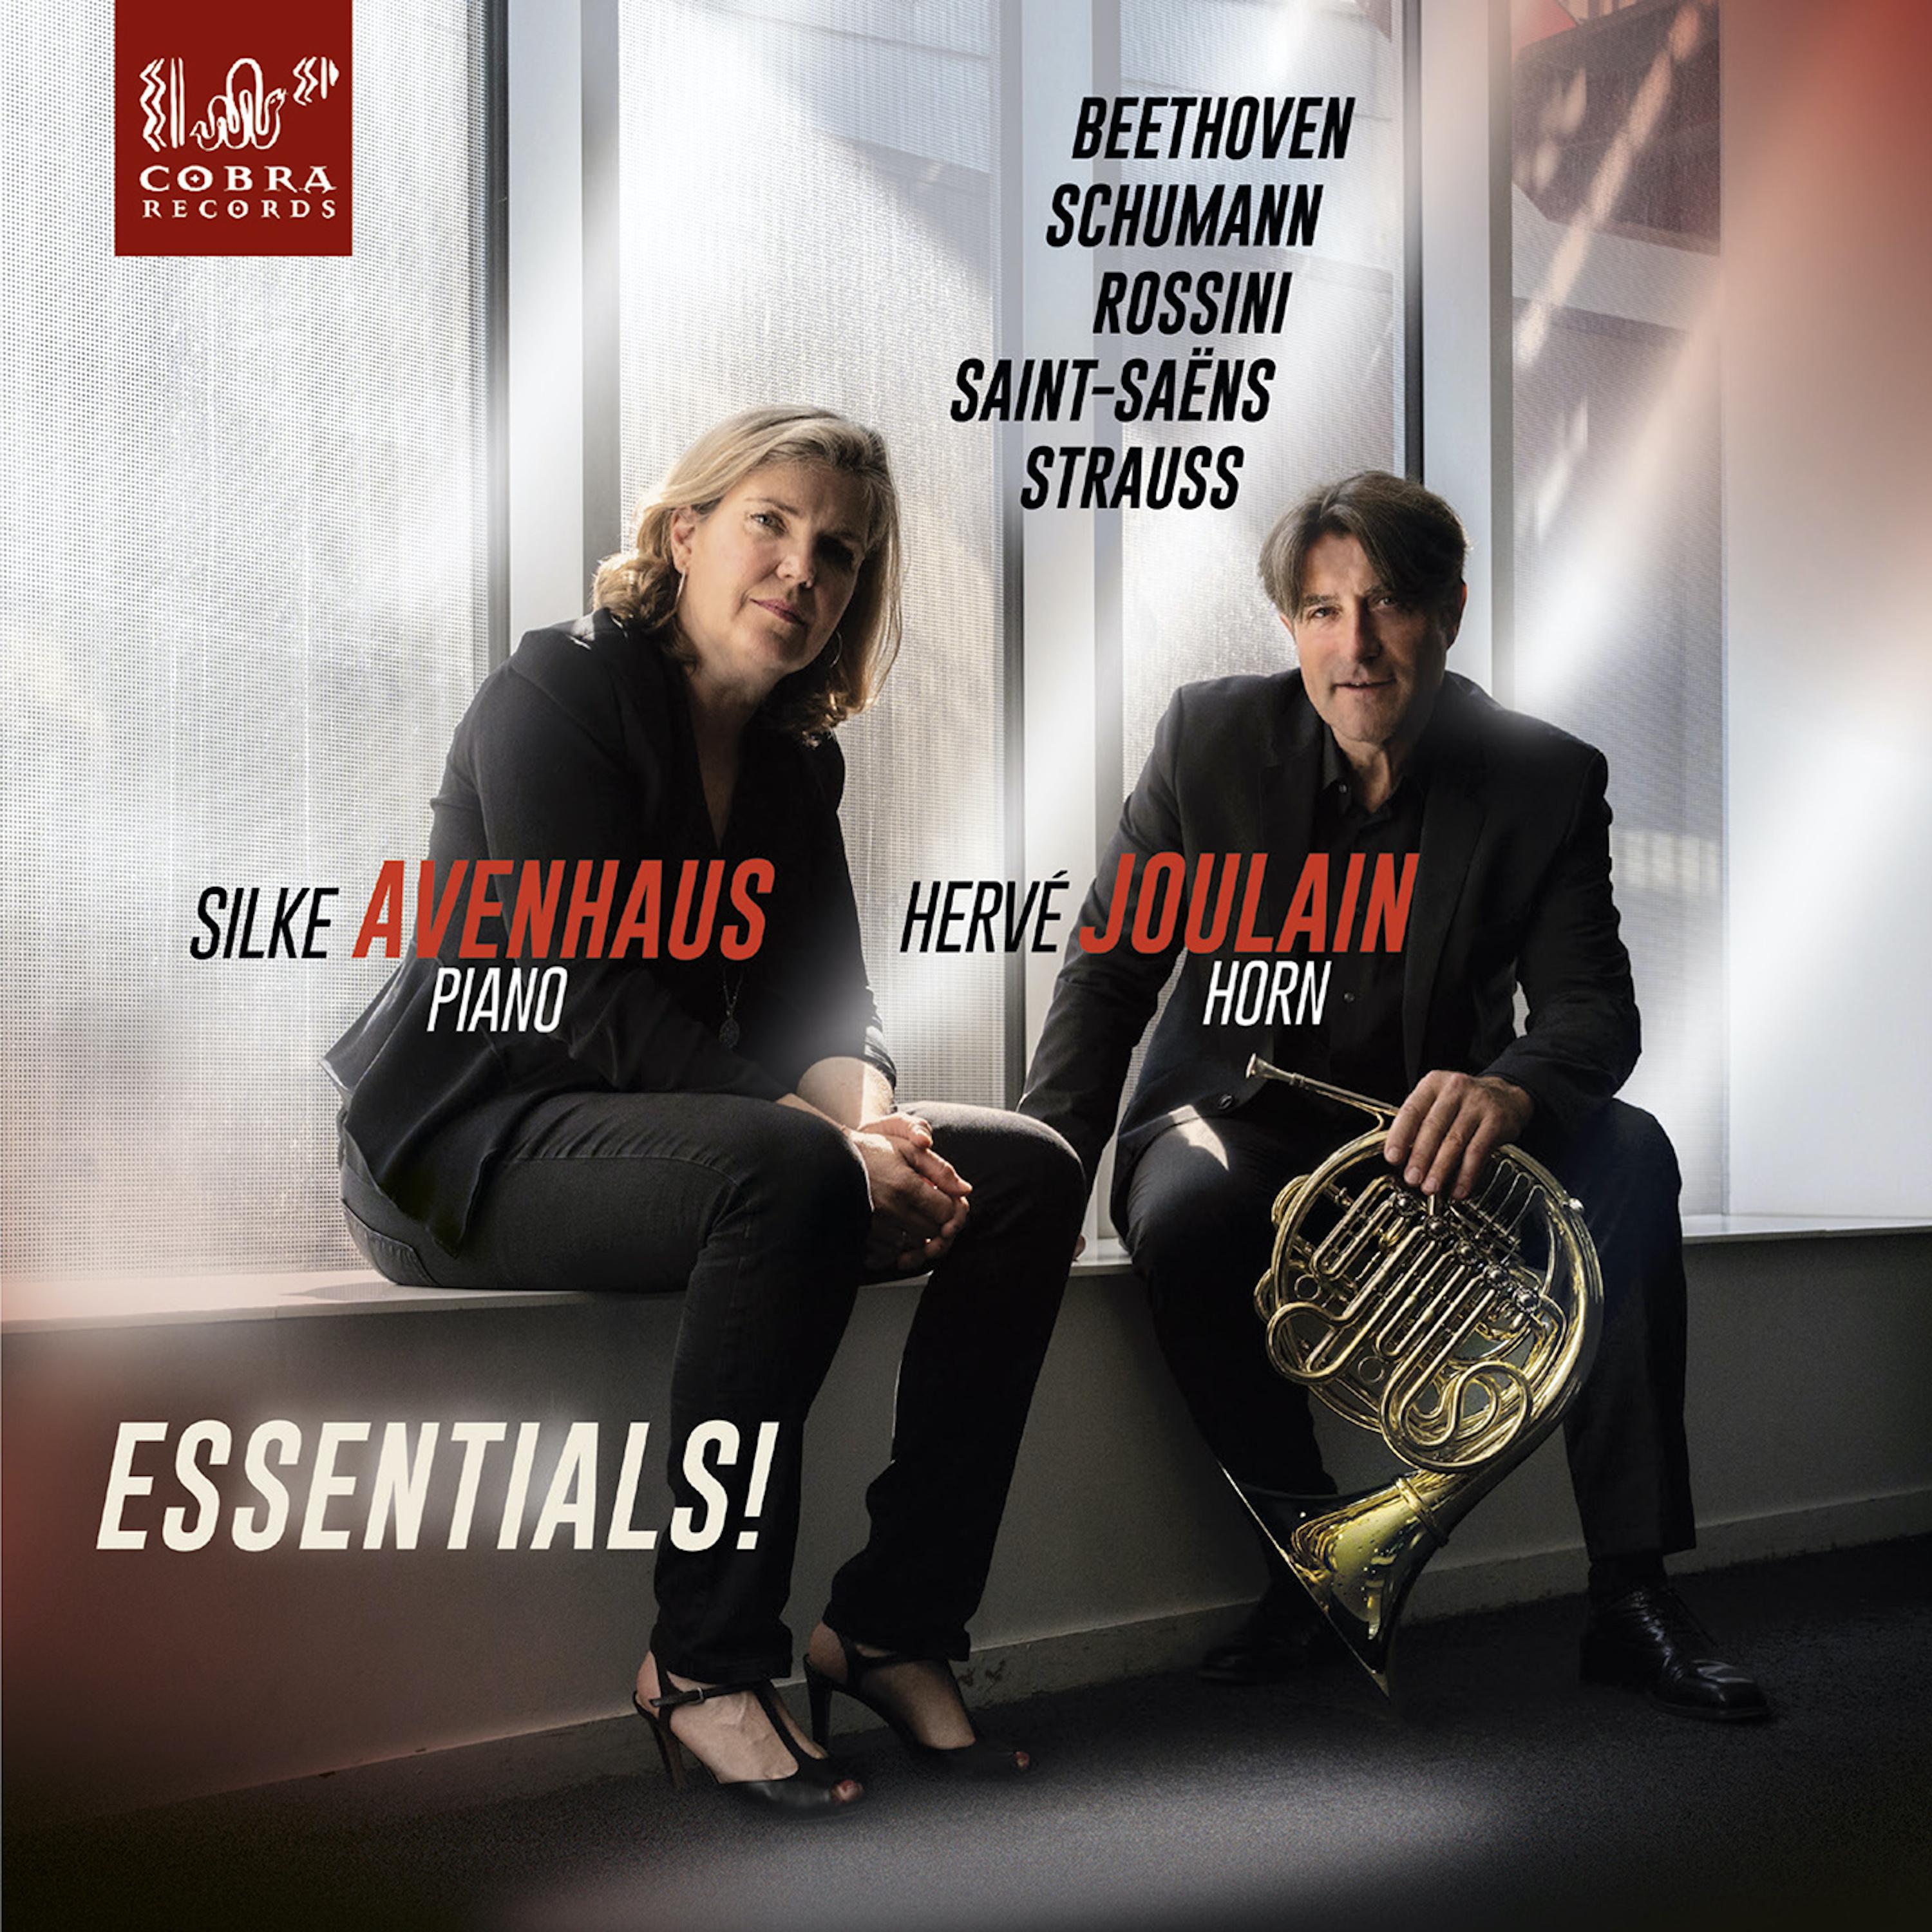 Hervé Joulain - Adagio & Allegro Op. 70 in Ab Major: Adagio - Langsam mit innigem Ausdruck